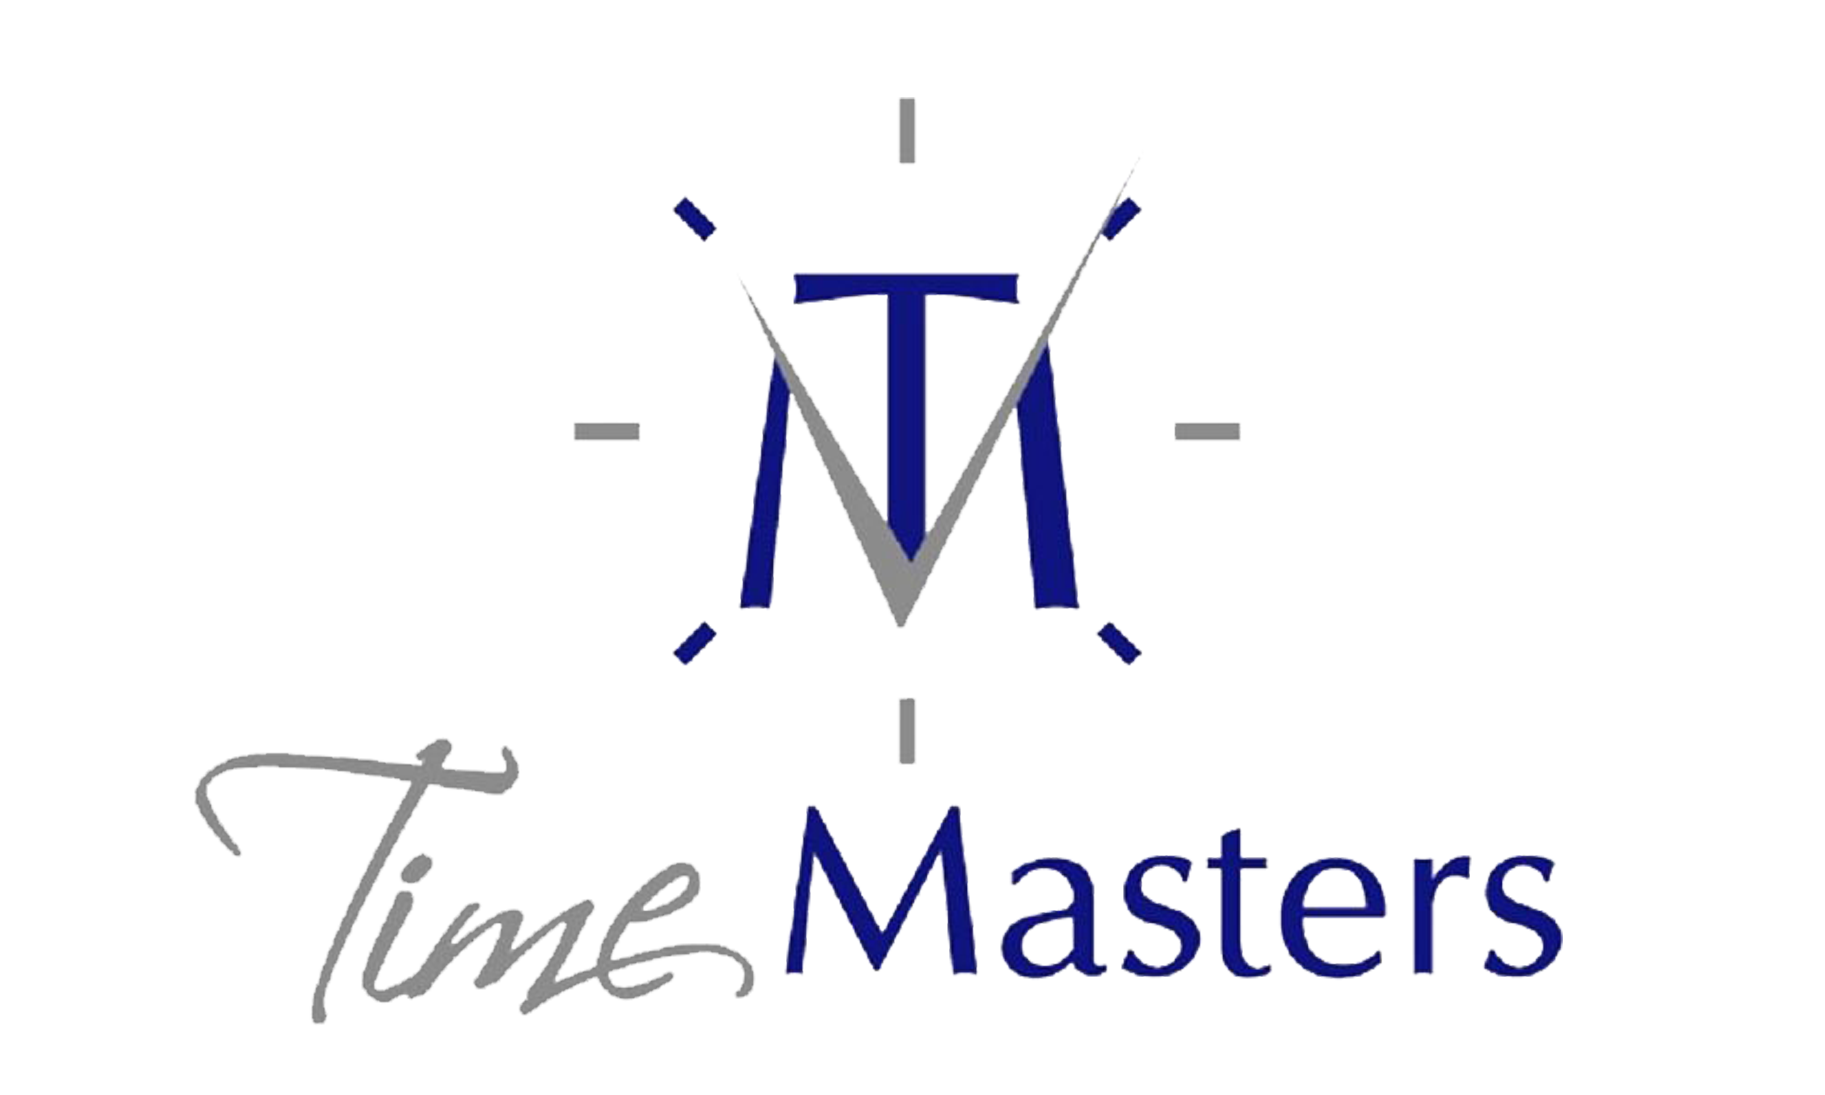 TimeMaster_logo_M_ajust